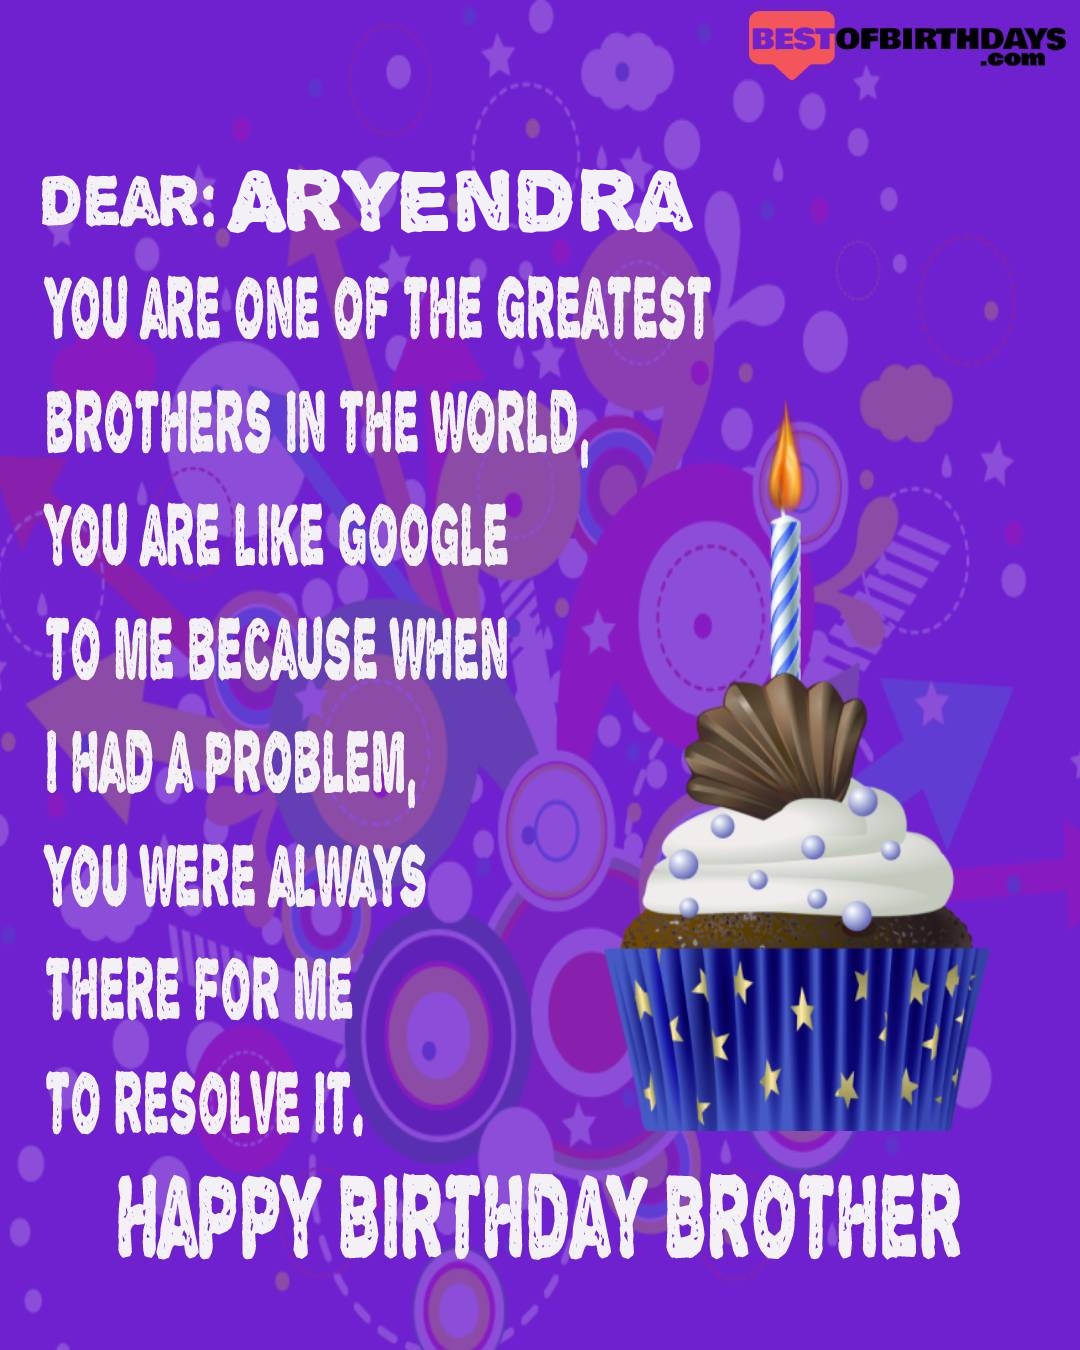 Happy birthday aryendra bhai brother bro